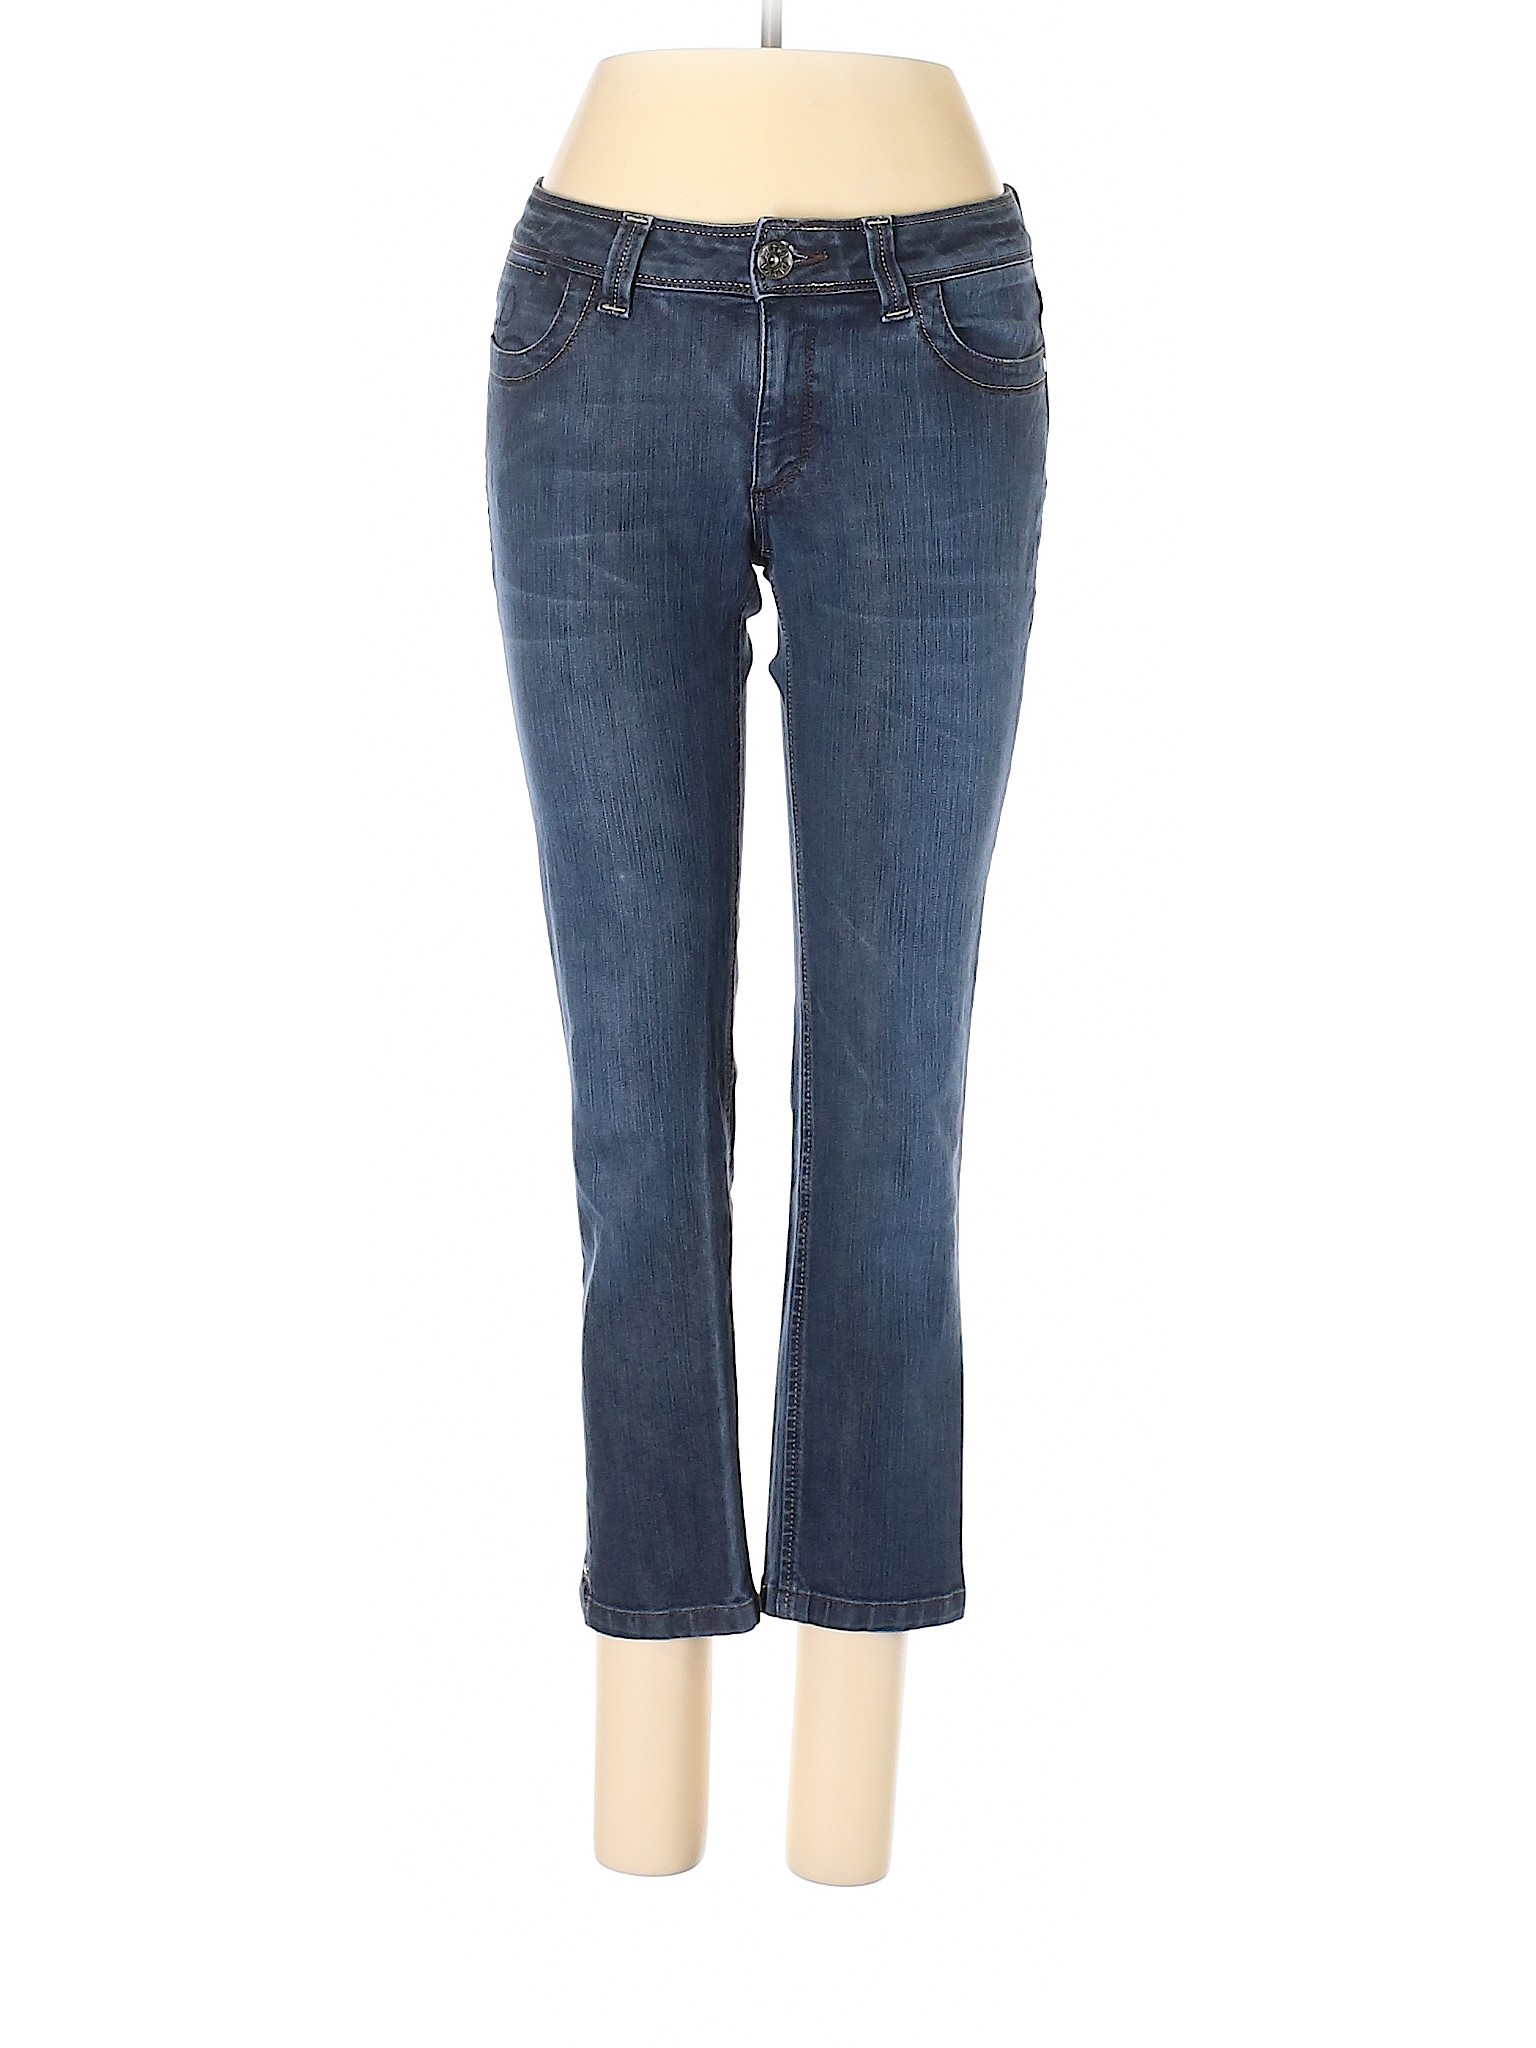 DL1961 Women Blue Jeans 29W | eBay